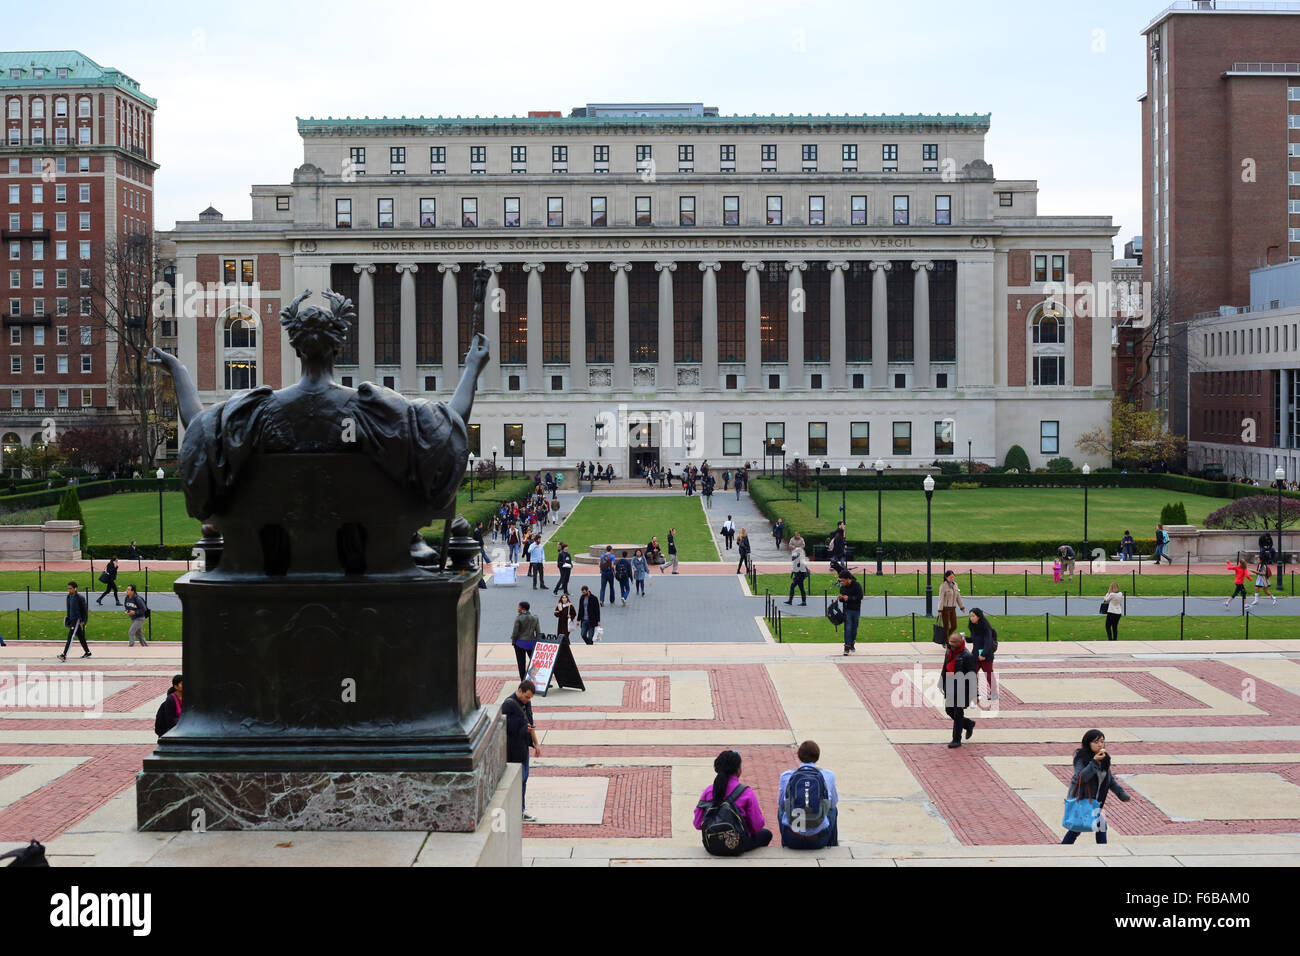 Columbia University, New York, NY. Stock Photo